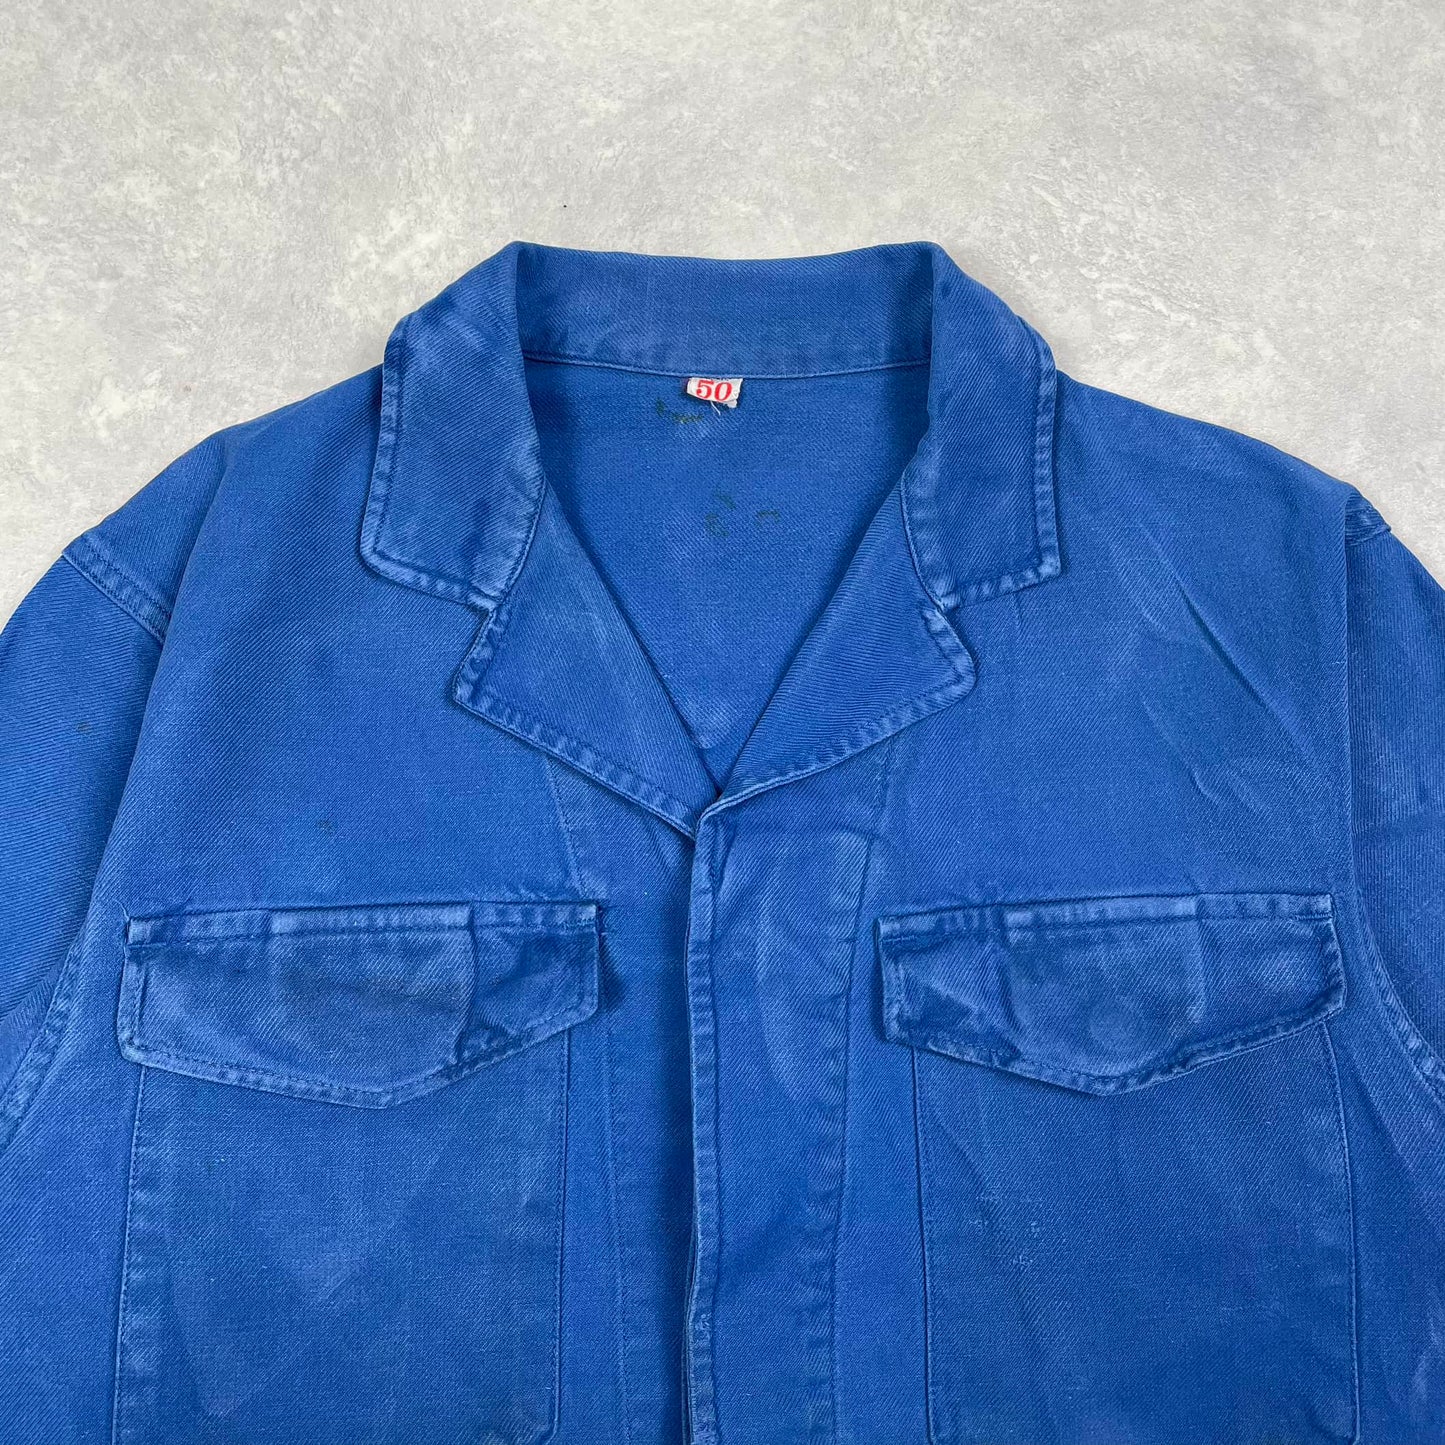 Vintage Bleu de Travail Jacket #2